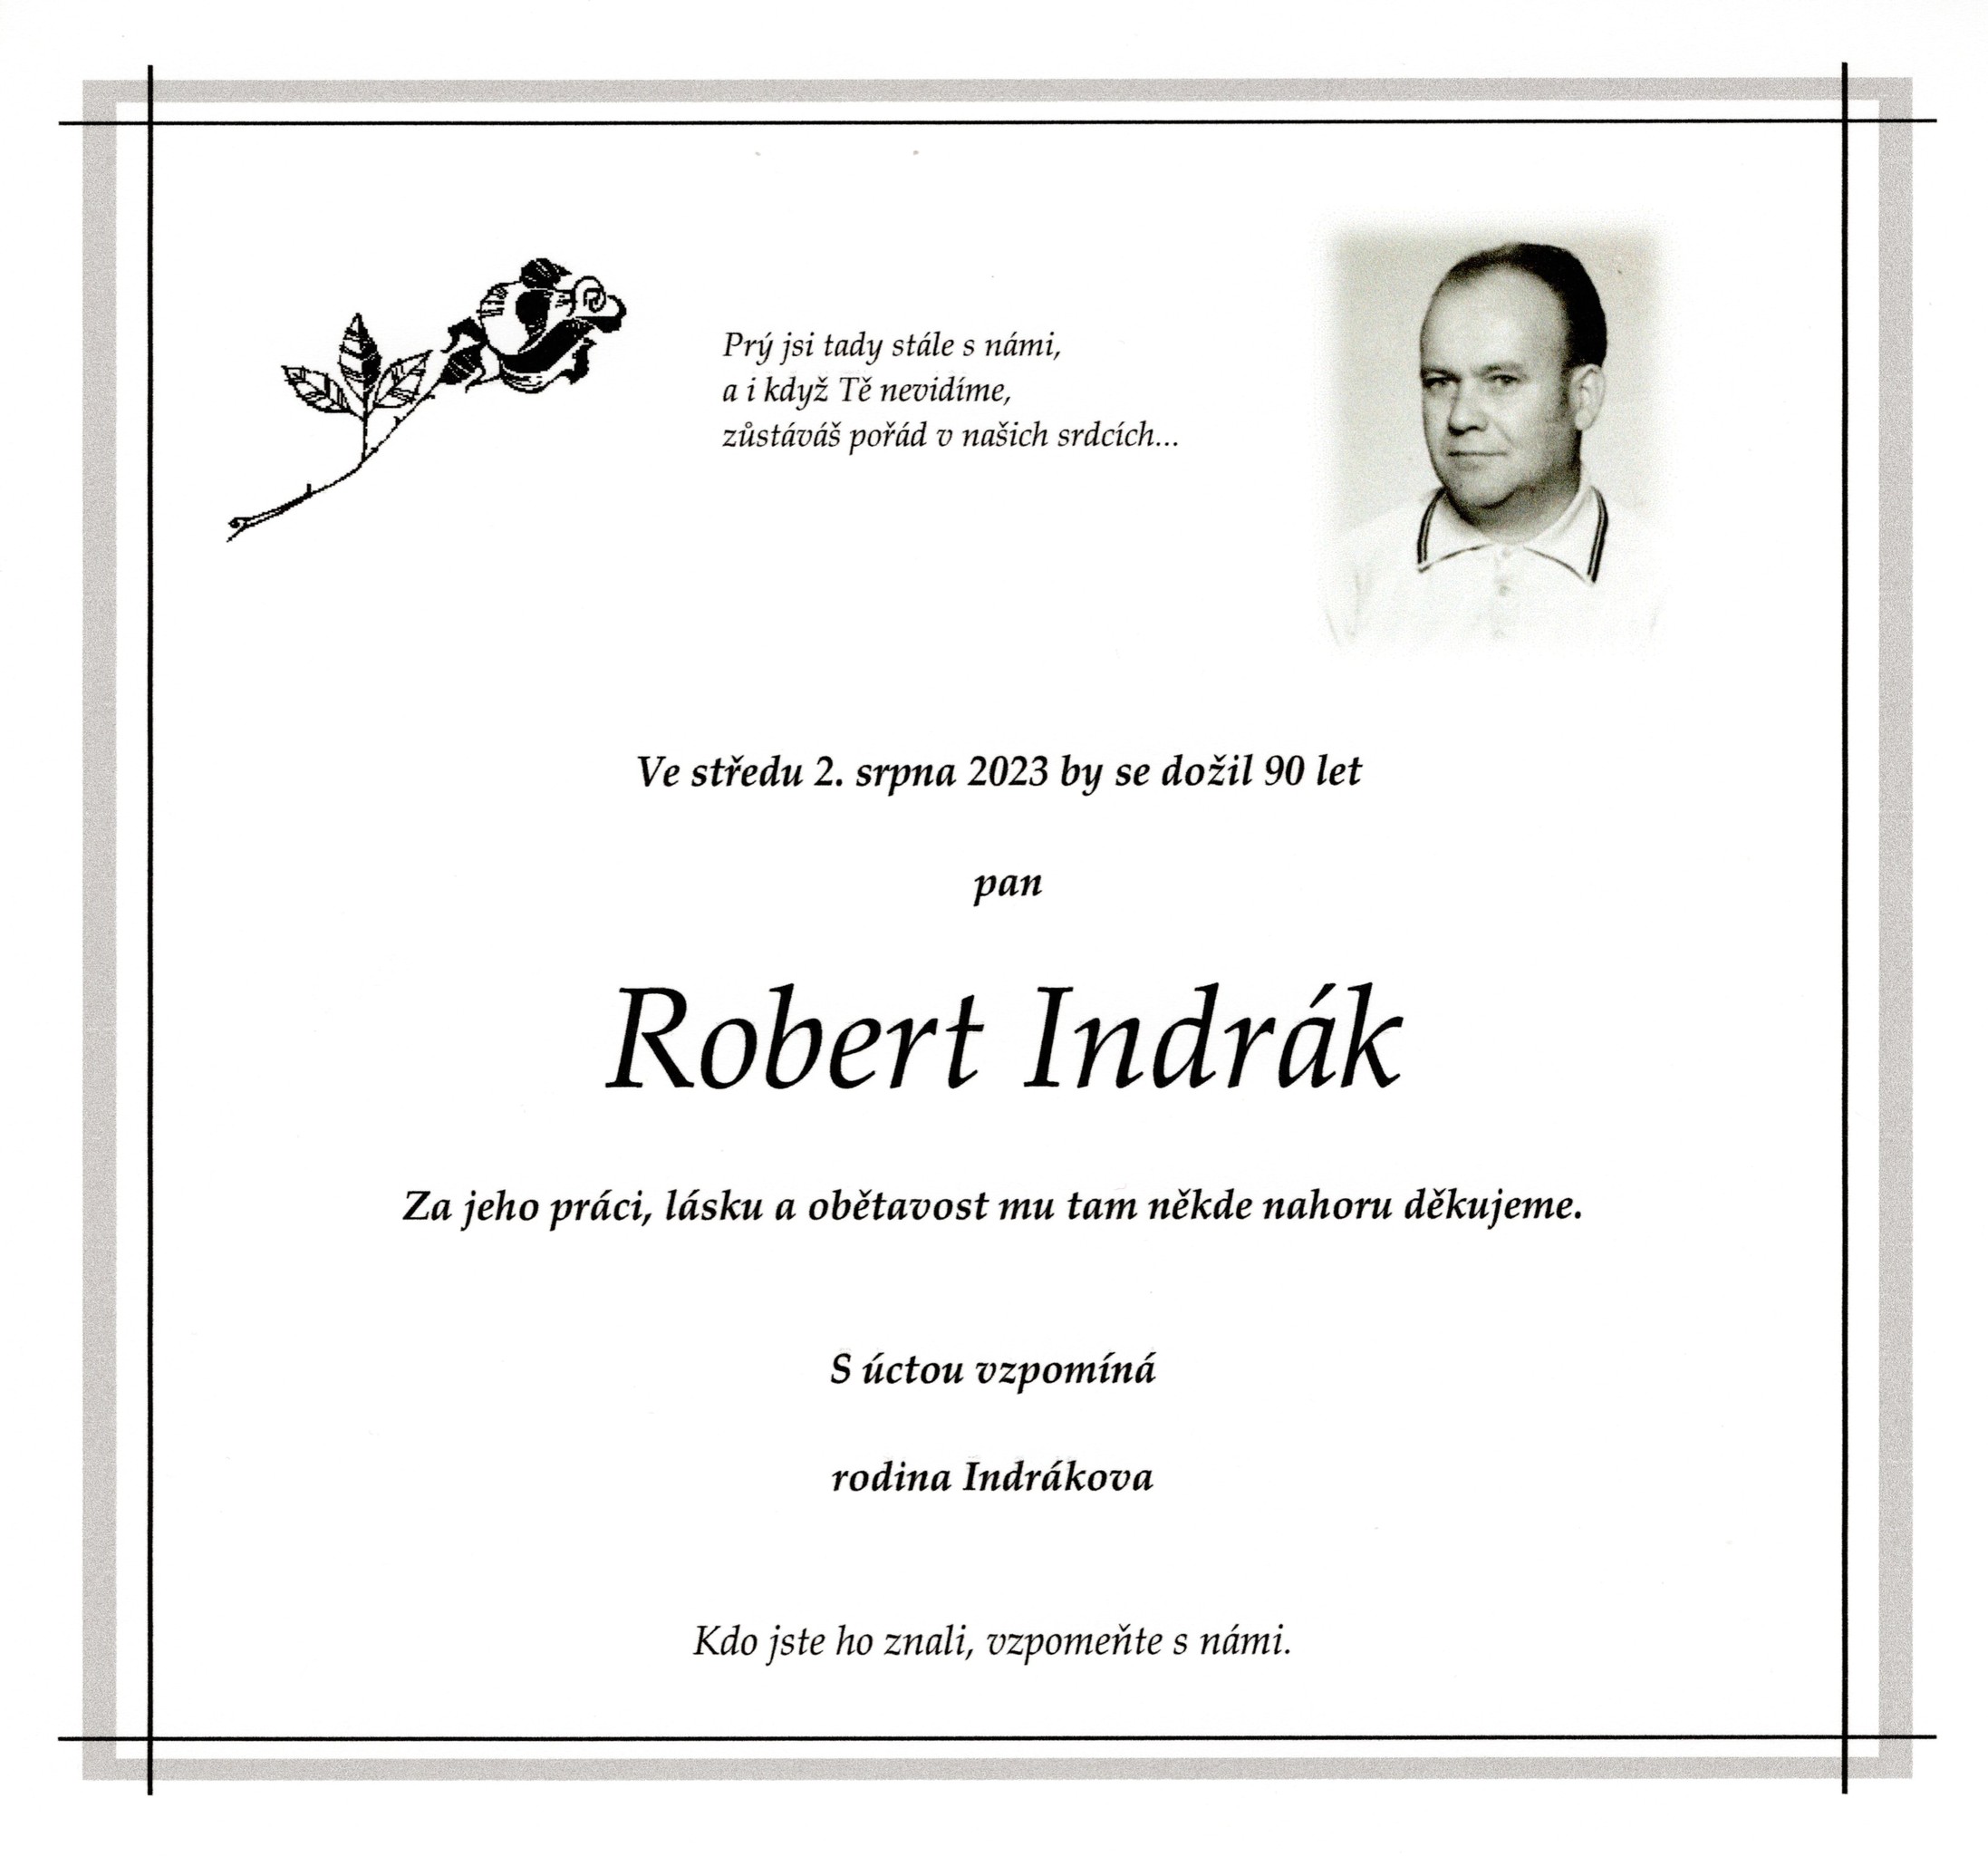 Robert Indrák